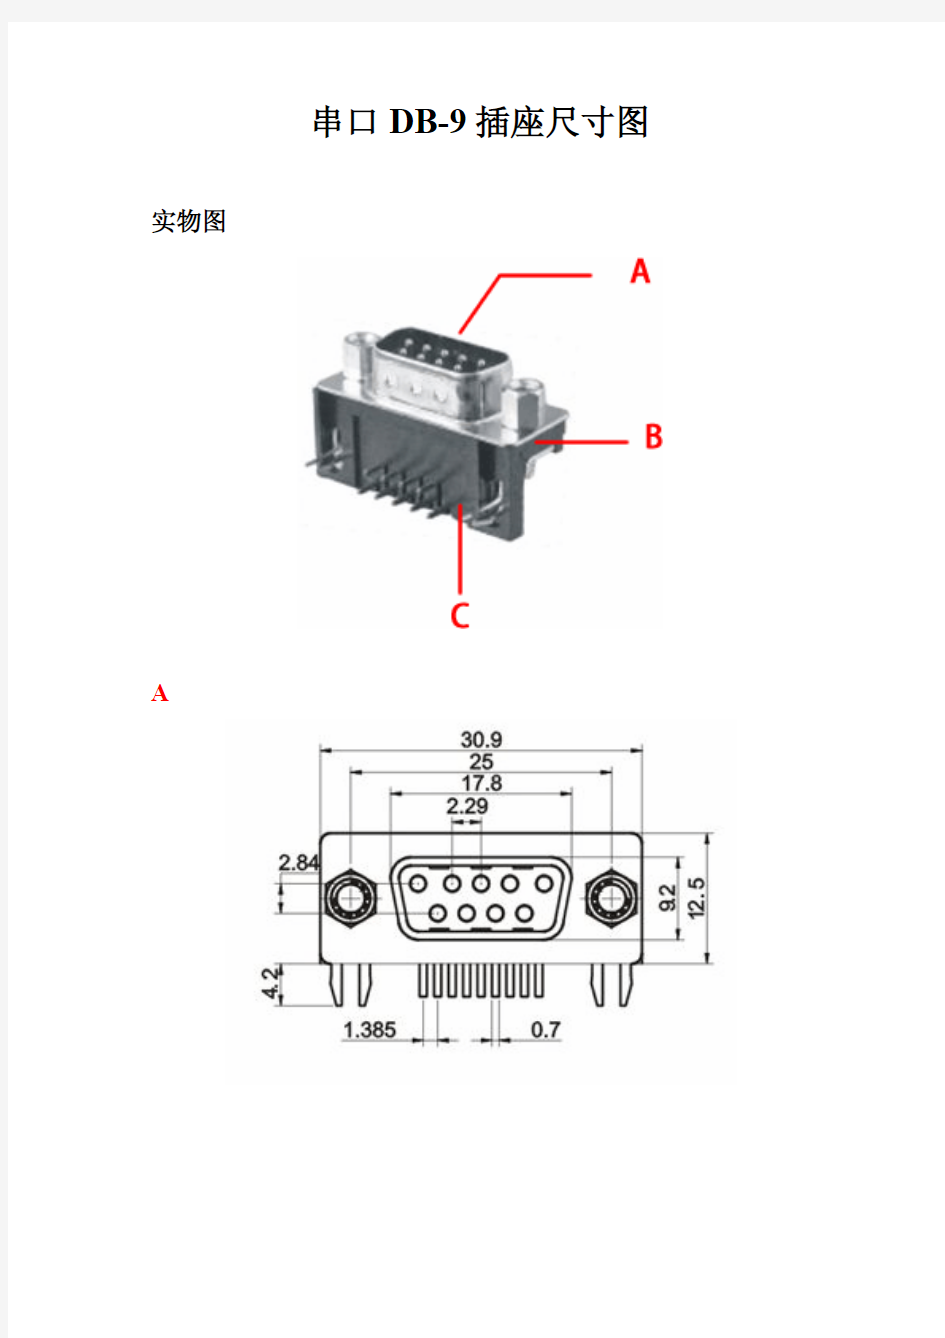 串口DB-9 插座尺寸图